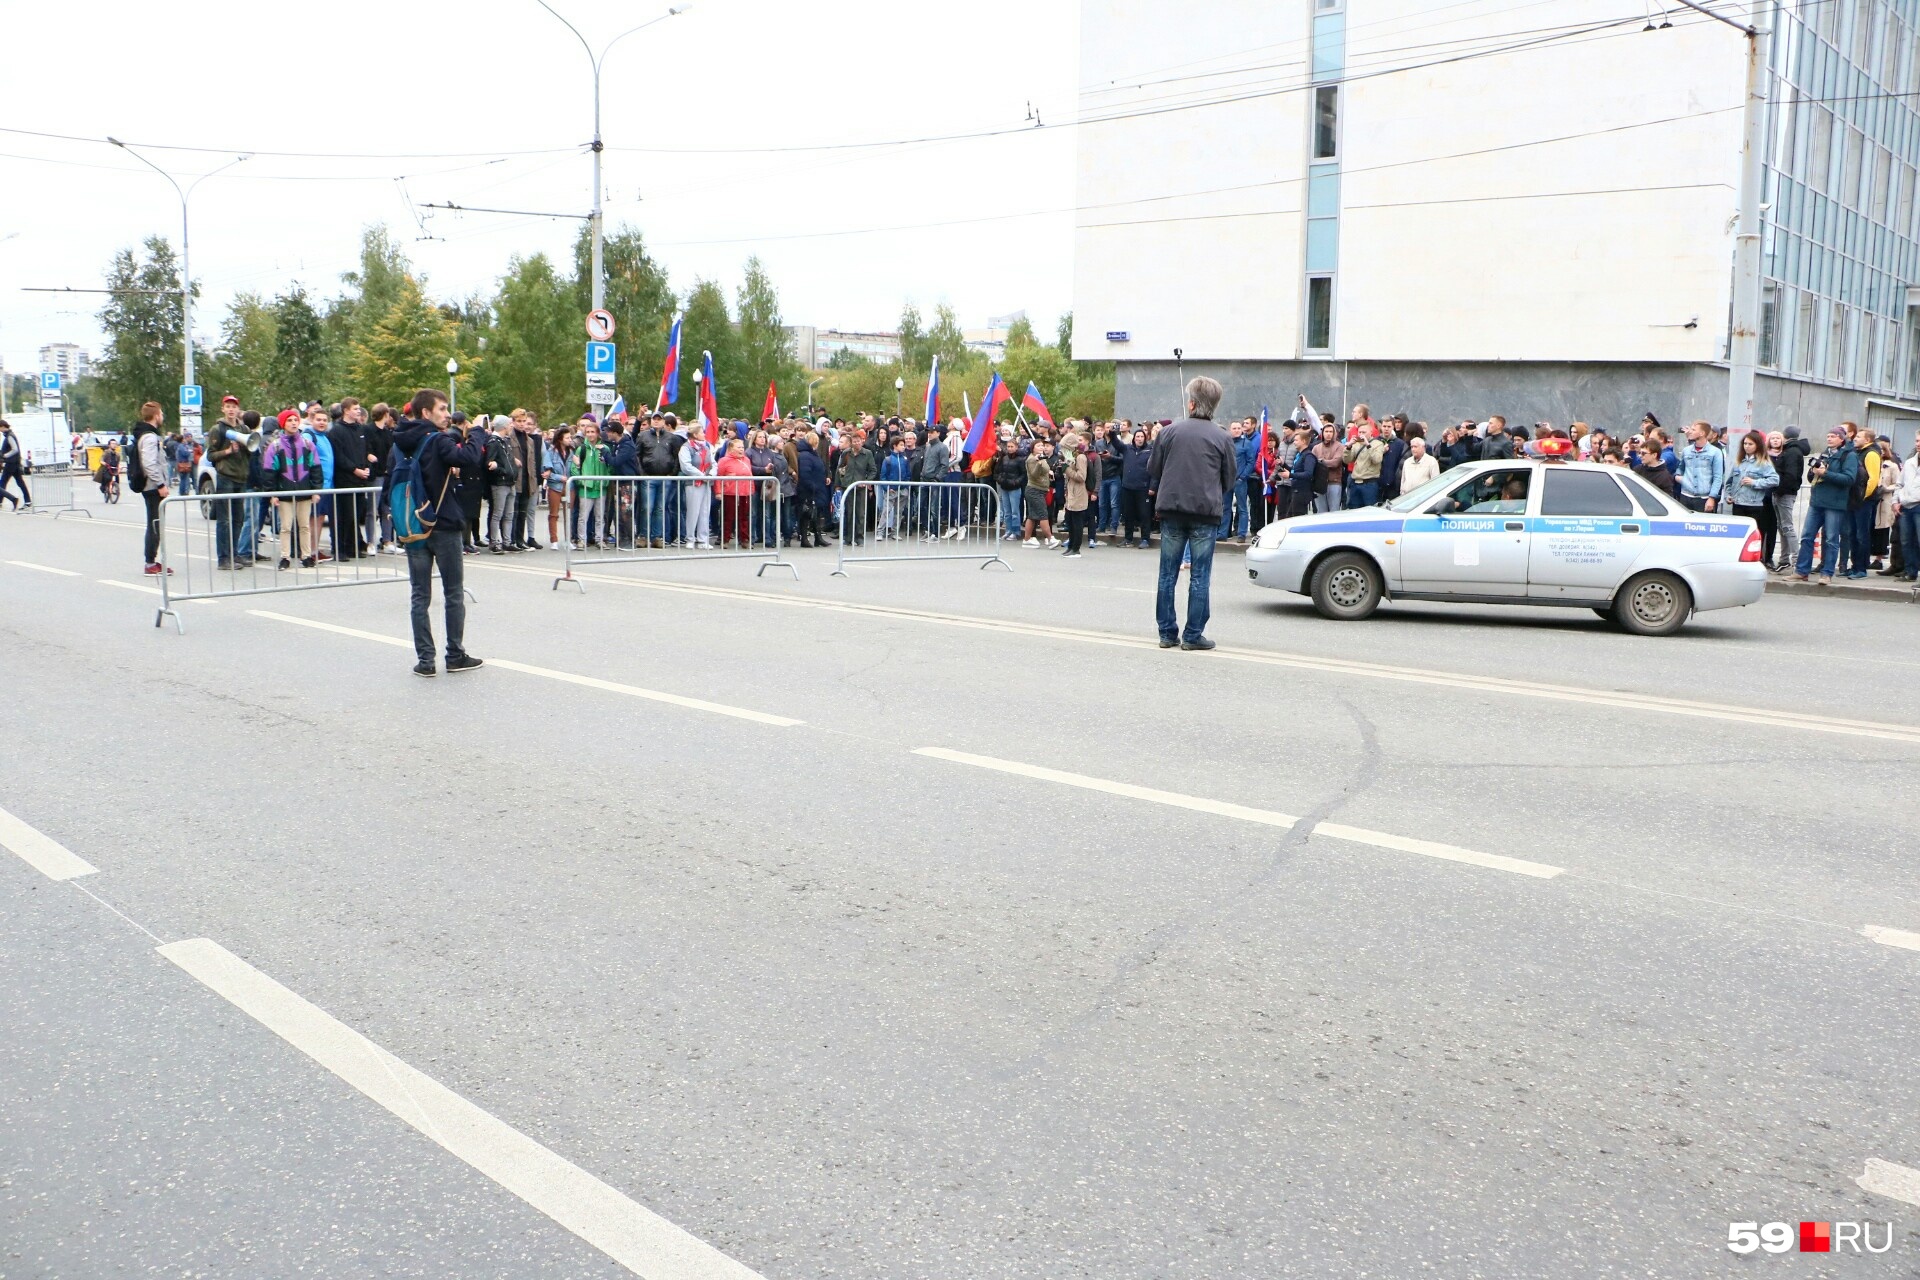 Движение транспорта на улице Ленина было временно остановлено